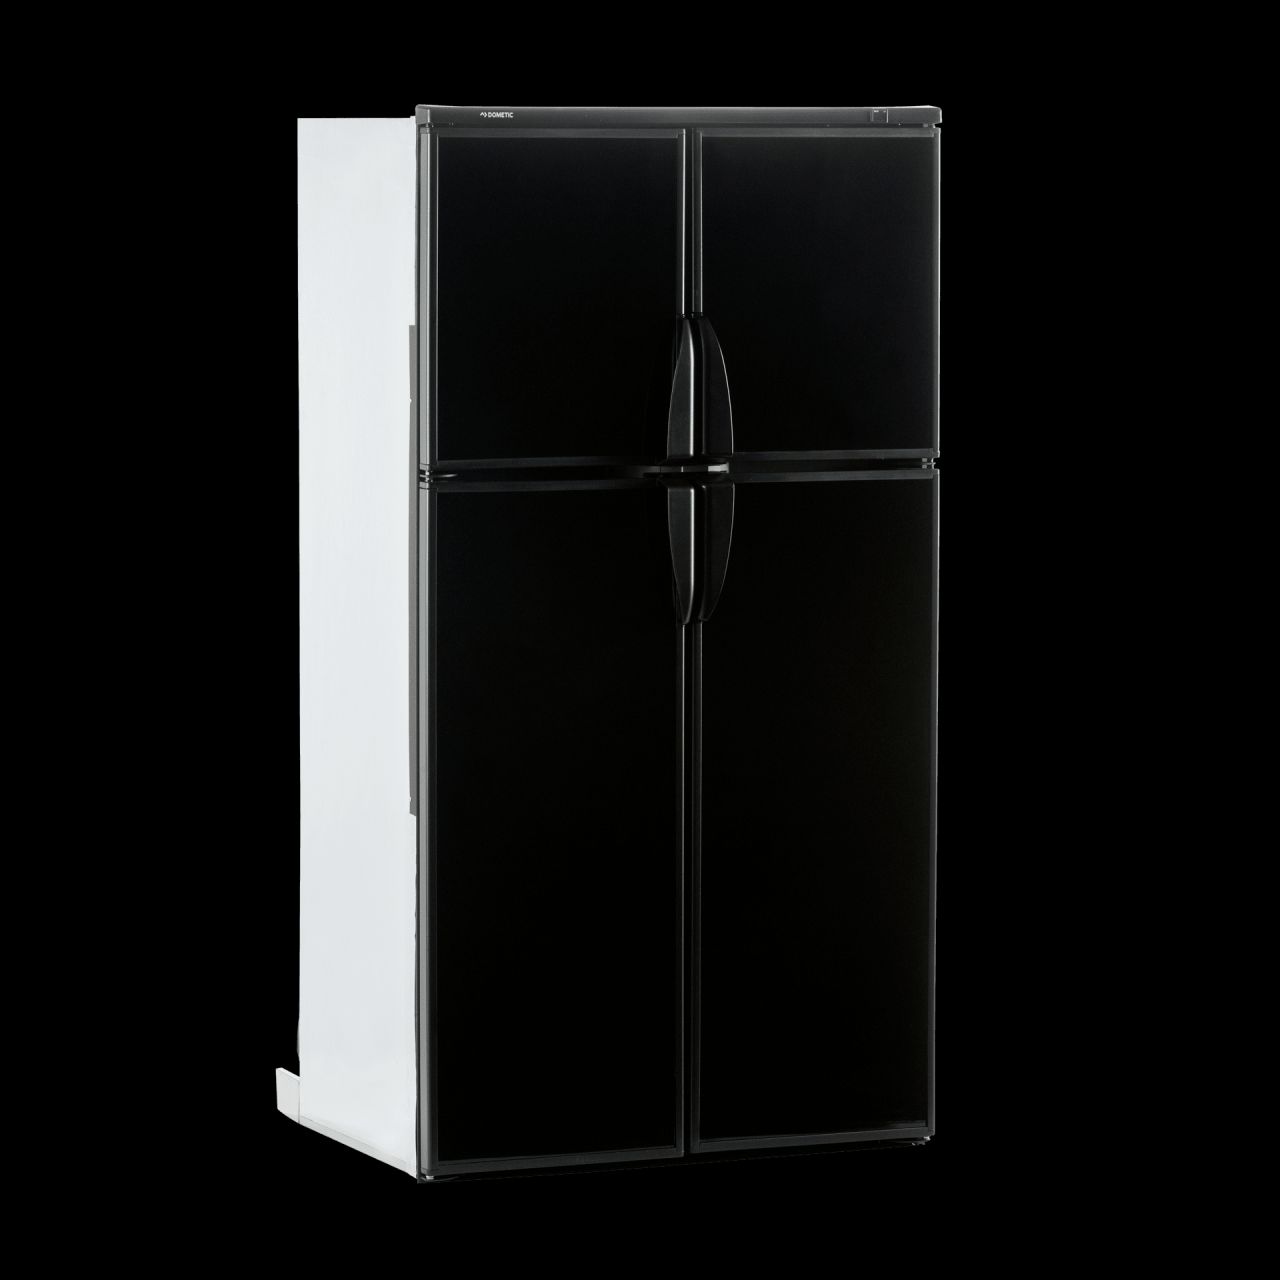 ᐅ RV Refrigerators – Compact, silent, durable | Dometic.com